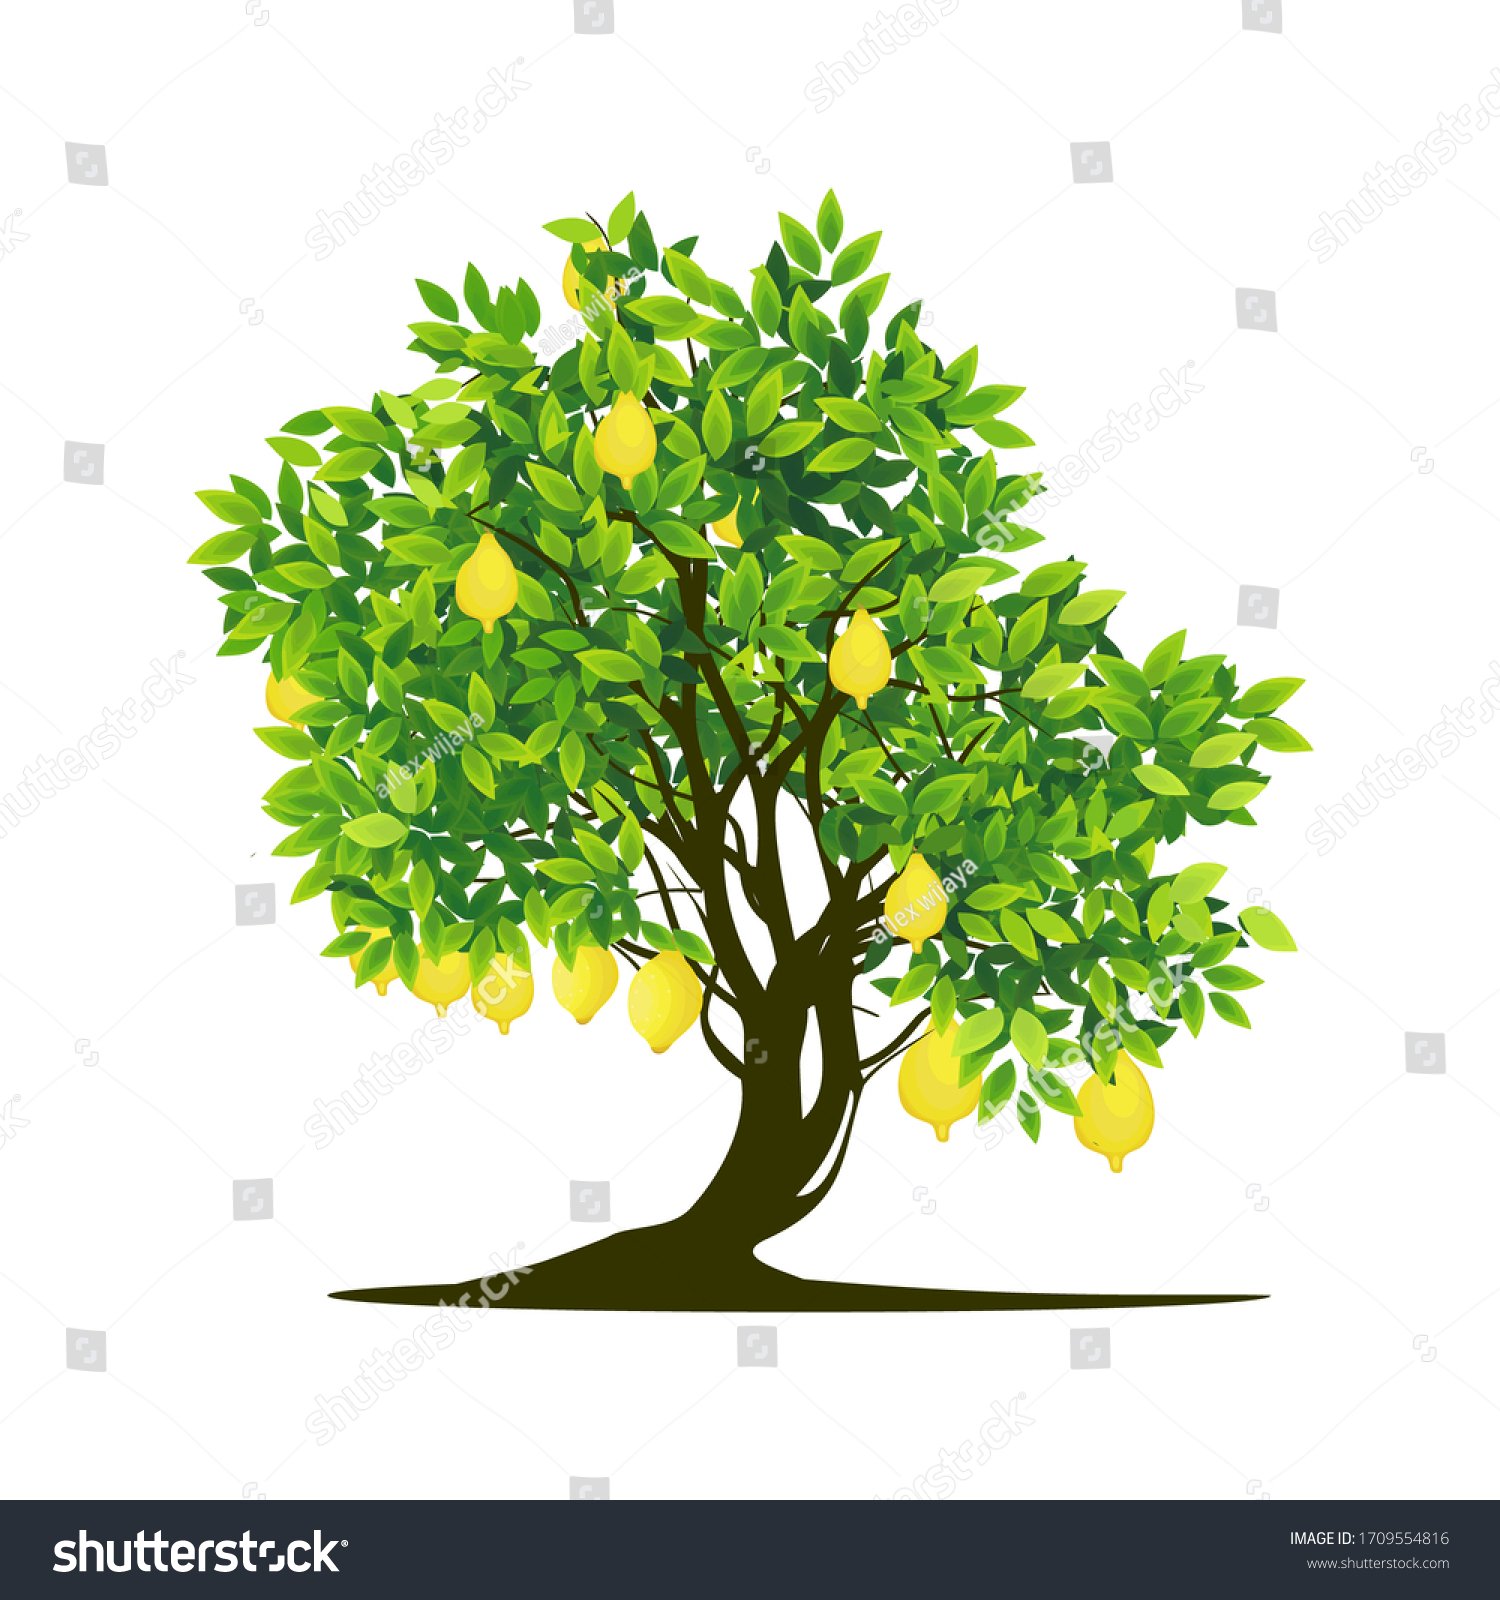 stock-vector-lemon-tree-plant-on-a-white-background-vector-1709554816.jpg